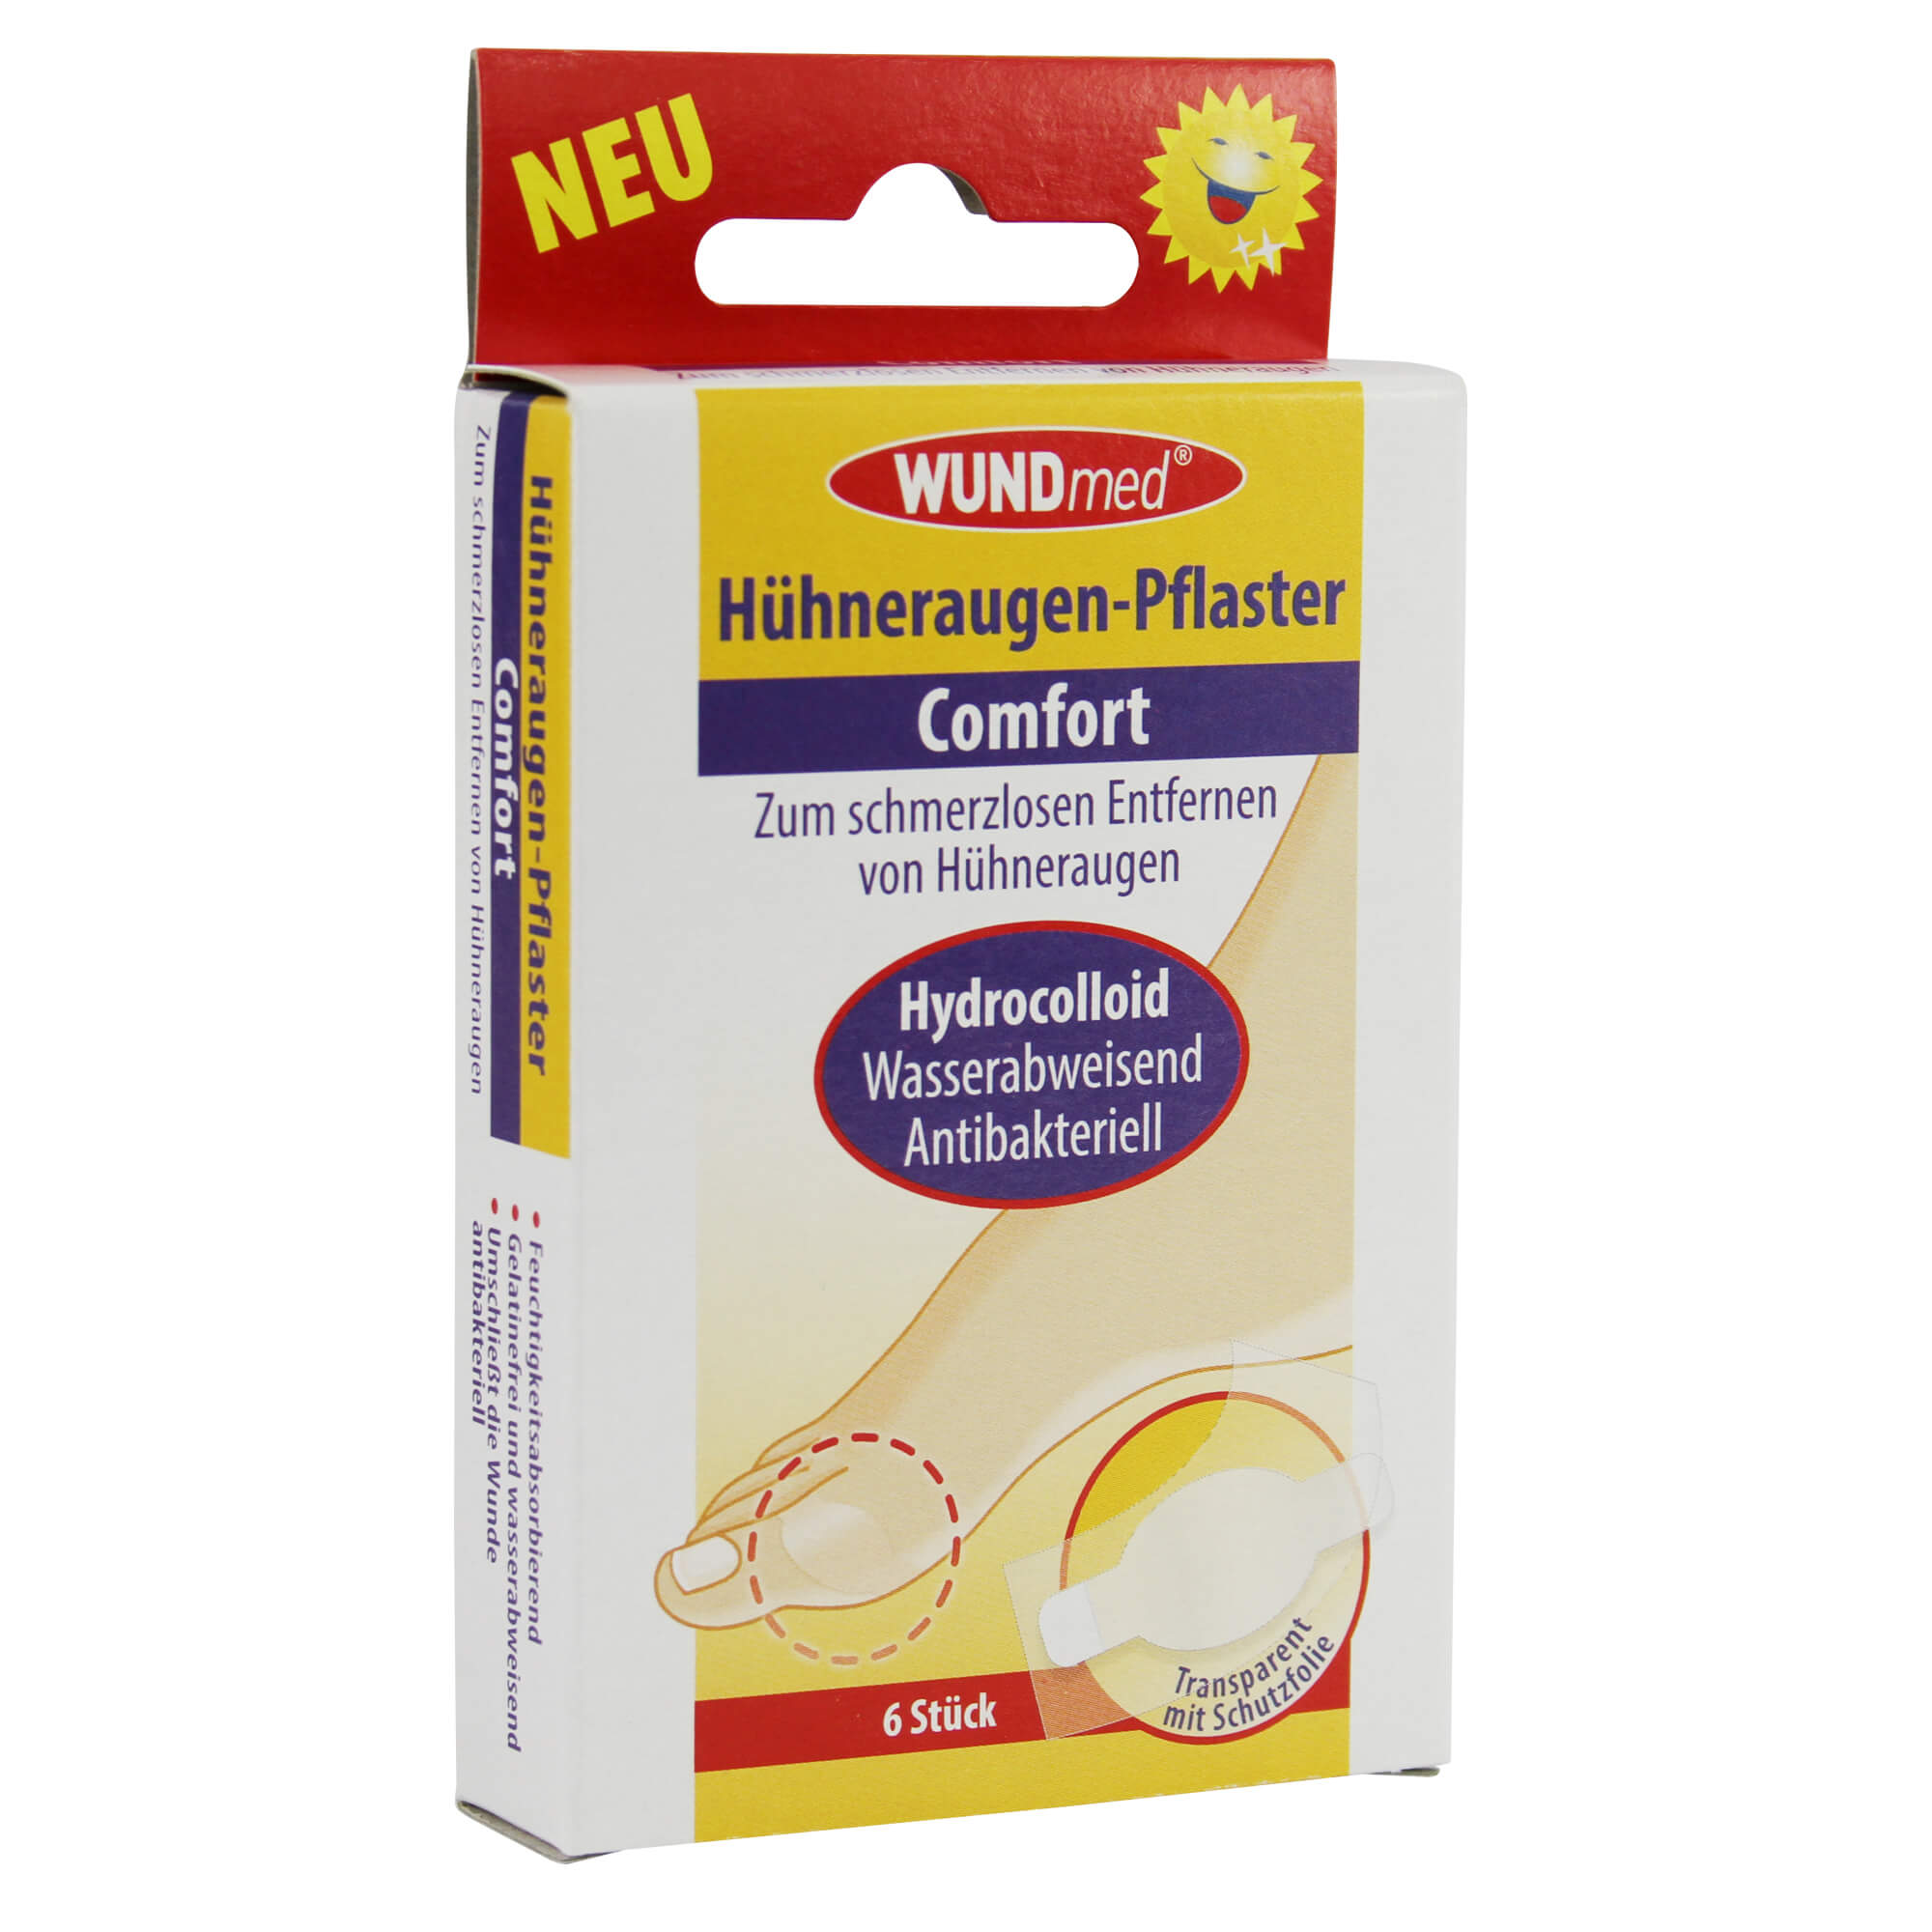 WUNDmed® Hühneraugen-Pflaster Comfort transparent 6 Pflaster/Packung